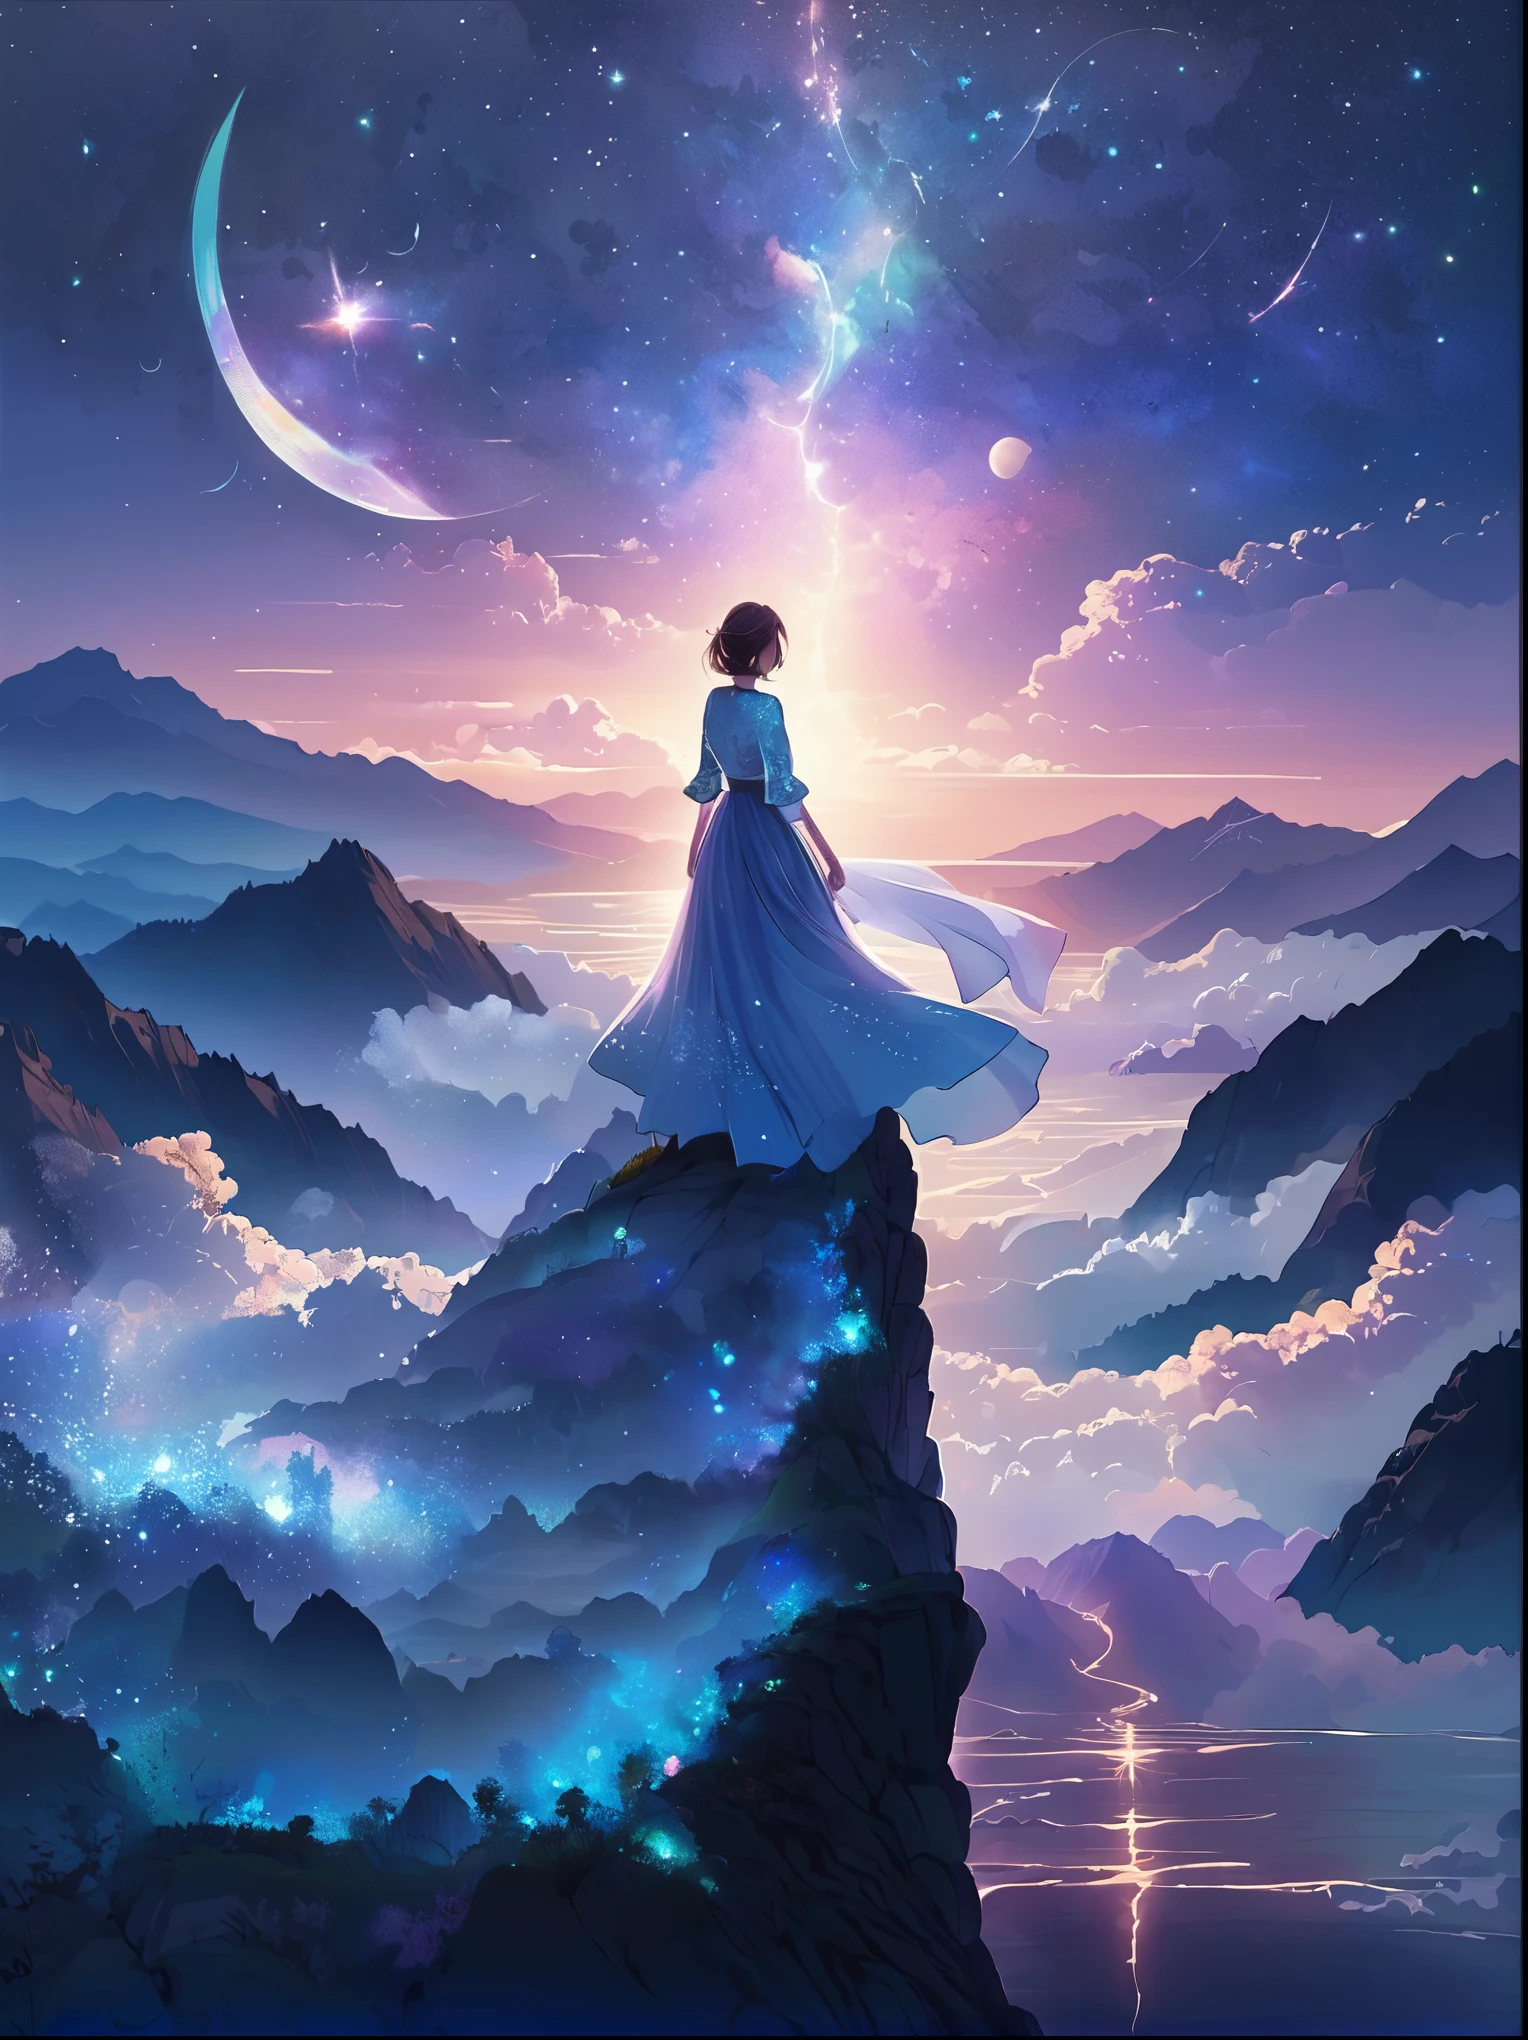 (從後面看)，一個人站在懸崖上，在梦幻般的, 朦朧的風景，(女孩&#39;完美的背部)，(背对观众)，被宇宙能量漩渦包圍，穿着飘逸长袍的人的背影，与天体气流融合，天空是深紫色和藍色的掛毯，點綴著星星，下面的景色隐约可见连绵起伏的山脉，這一幕是祥和莊嚴的，捕捉宇宙的壮丽本质，一个沉思的身影敬畏地站着